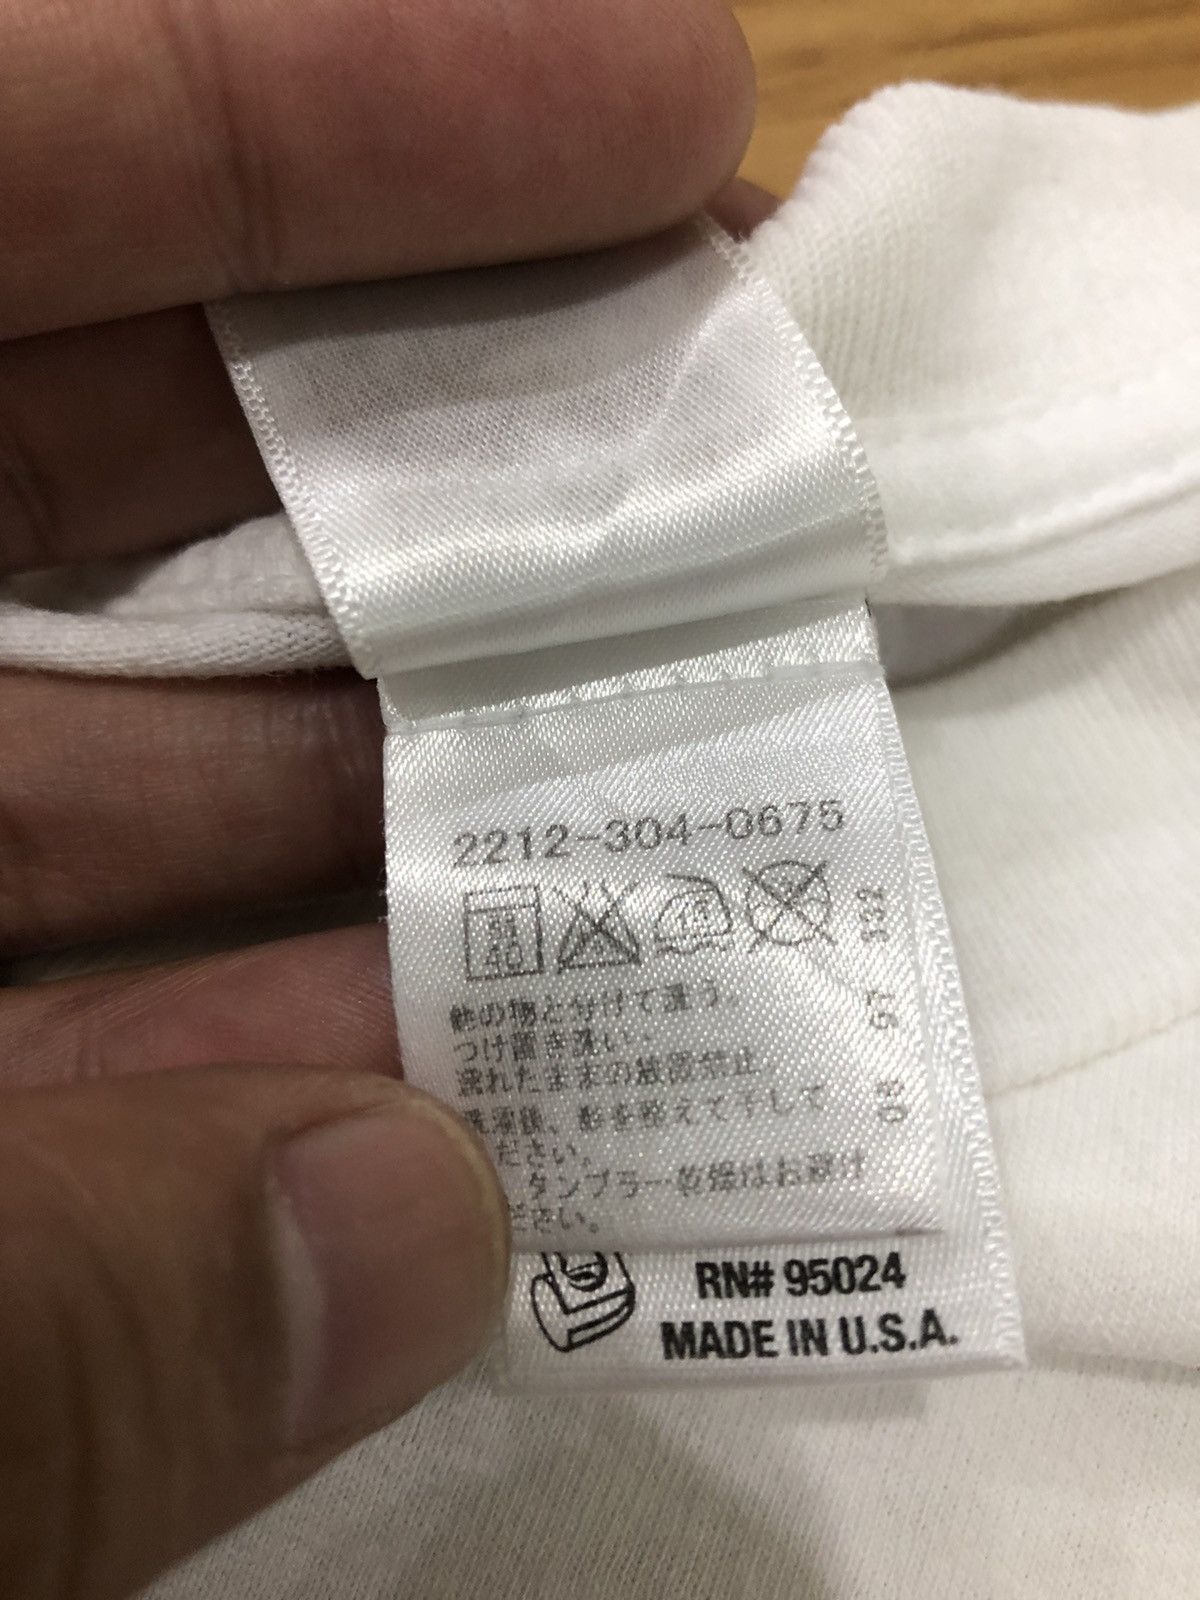 Chrome Hearts U.S.A. T-shirt (Japan Market) - 4